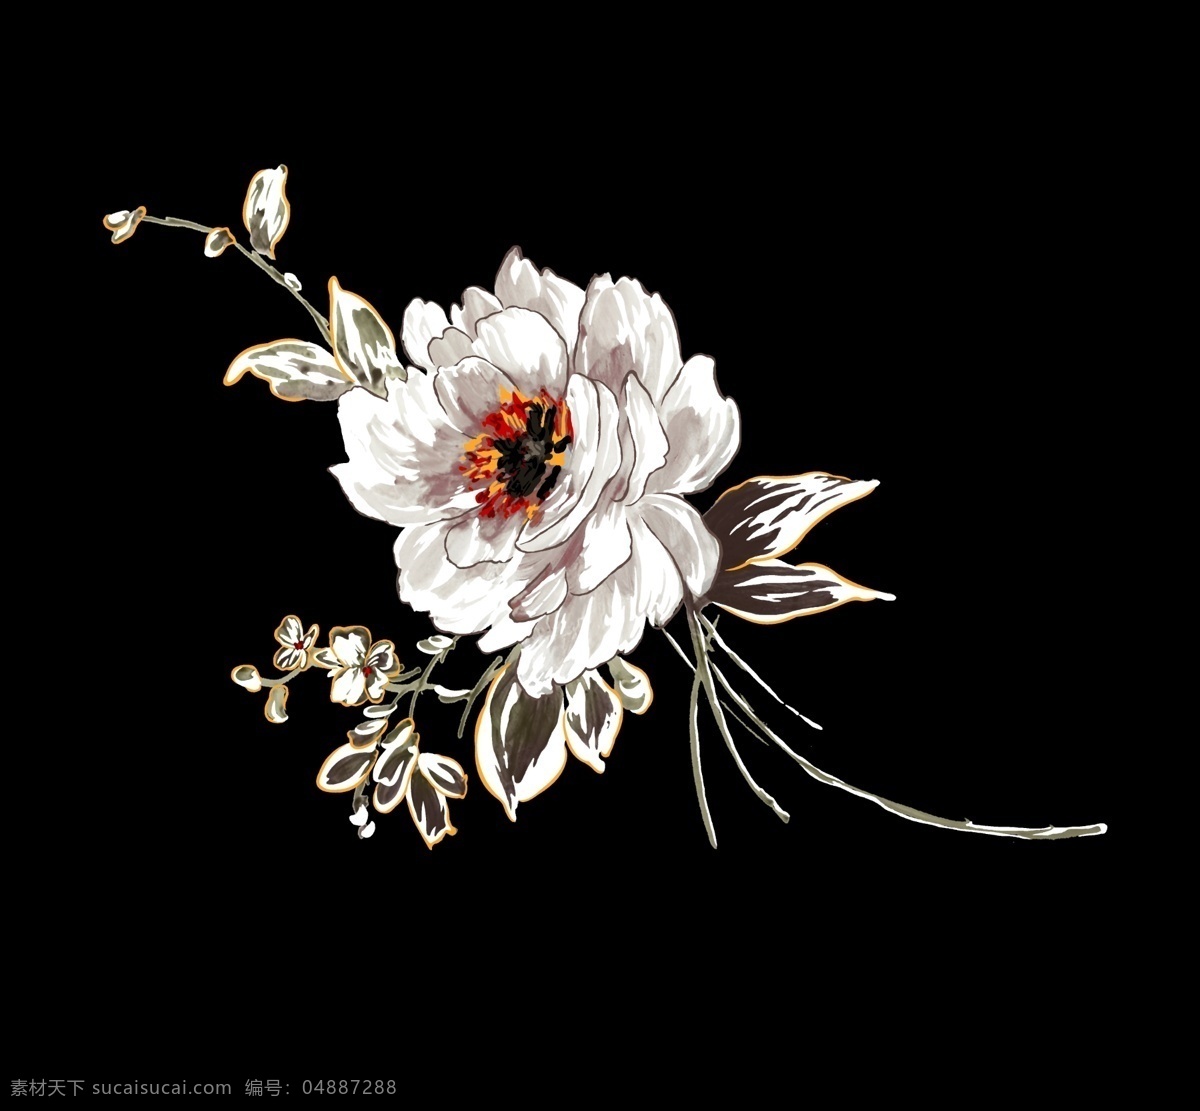 中国画 花卉图片 抽象花 手绘花 中国画花卉 水彩花卉 创意花卉 印花素材 高清 服装图案素材 家纺图案素材 花卉